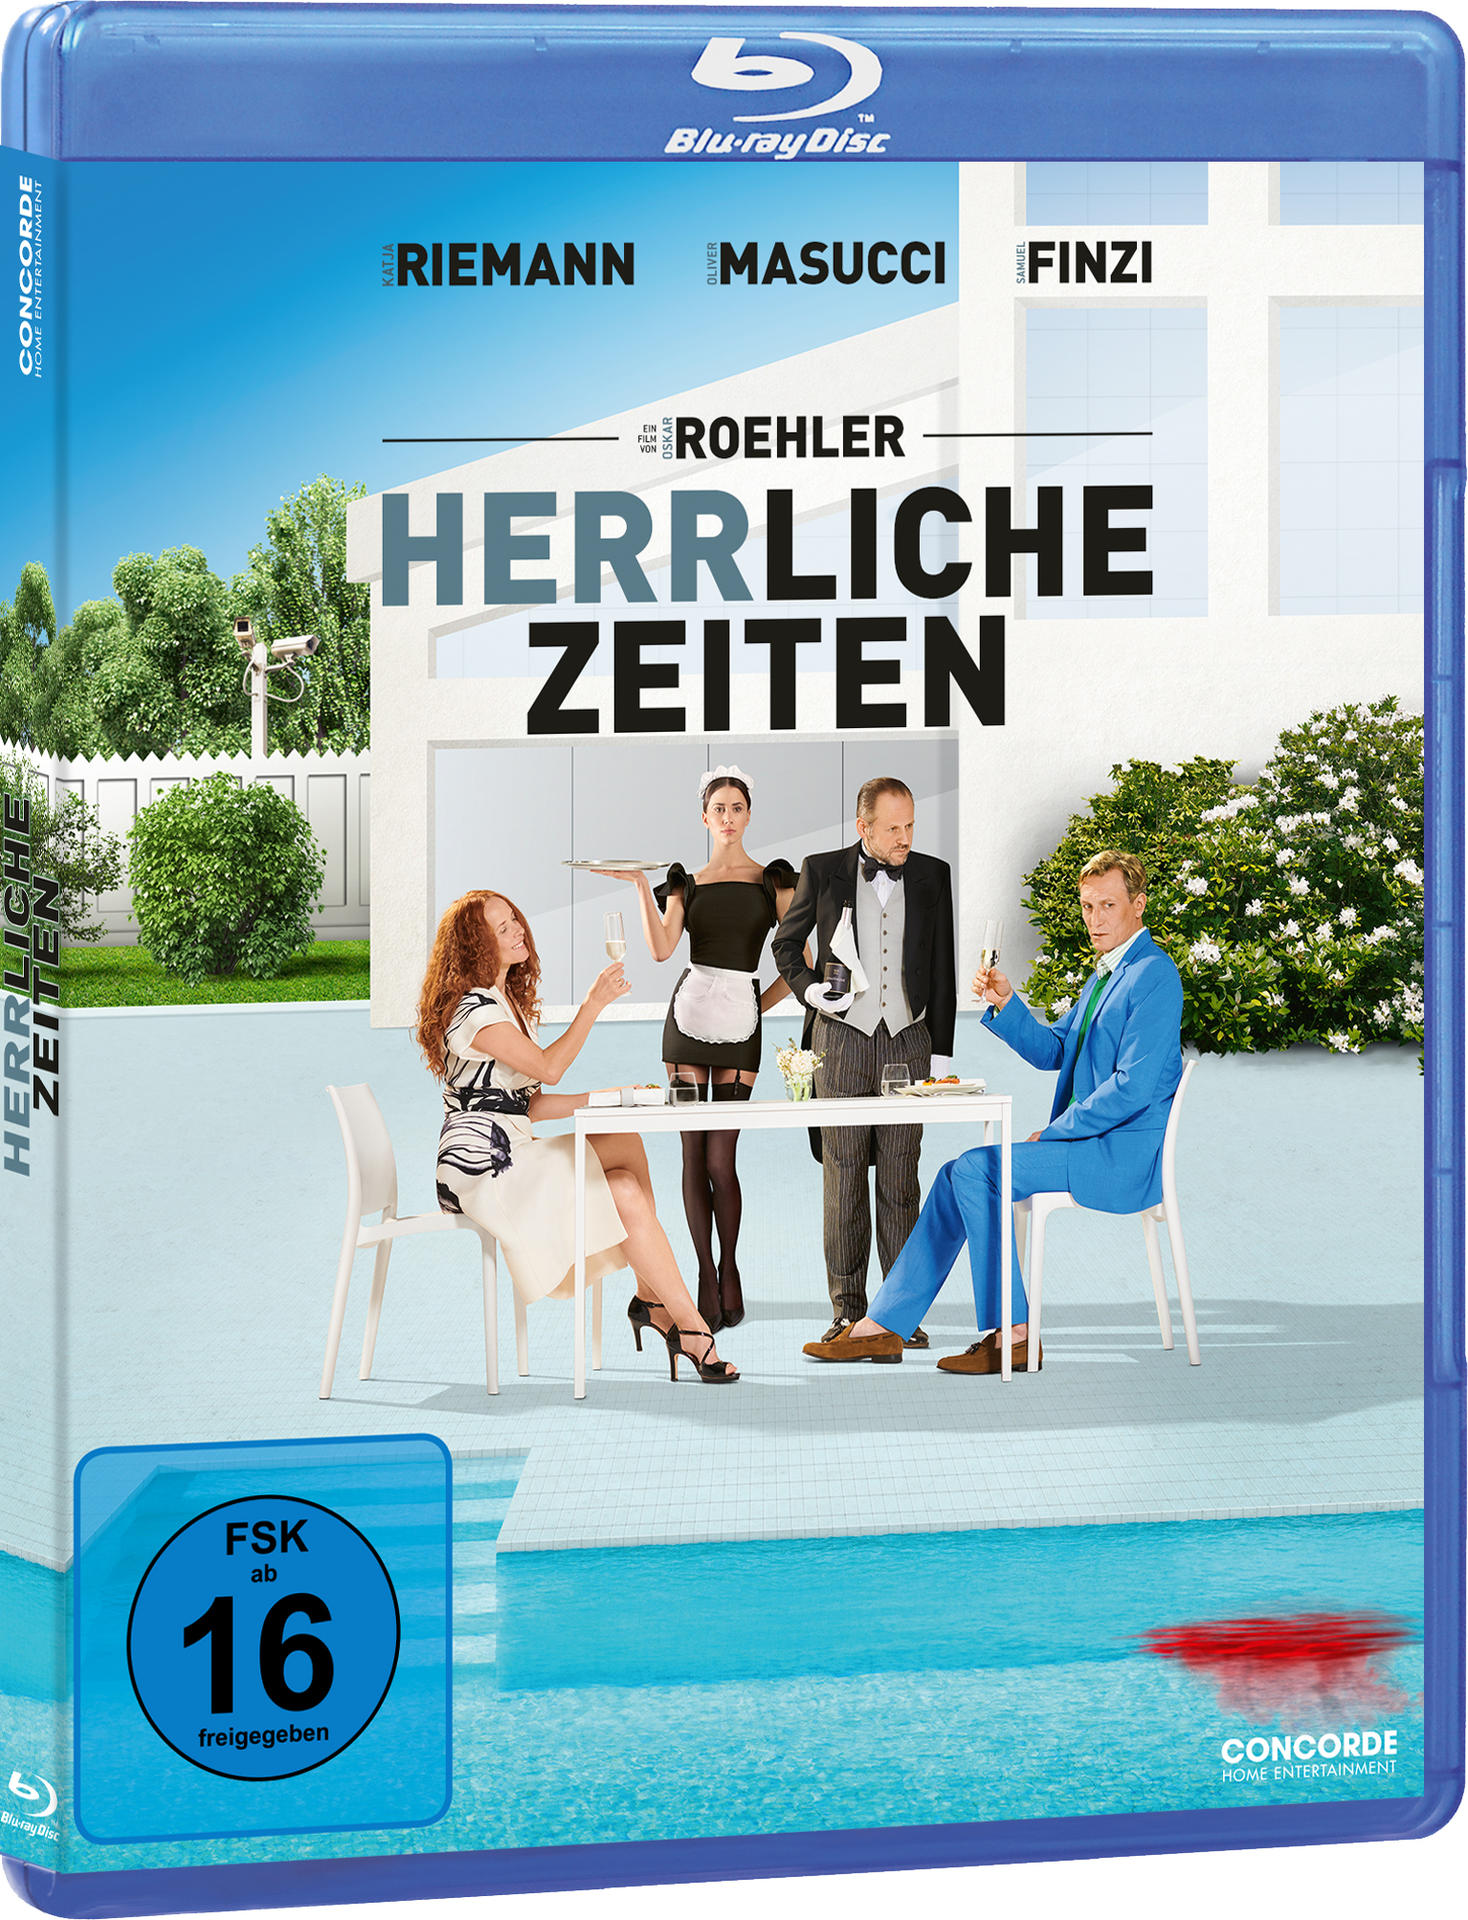 HERRLICHE Blu-ray ZEITEN